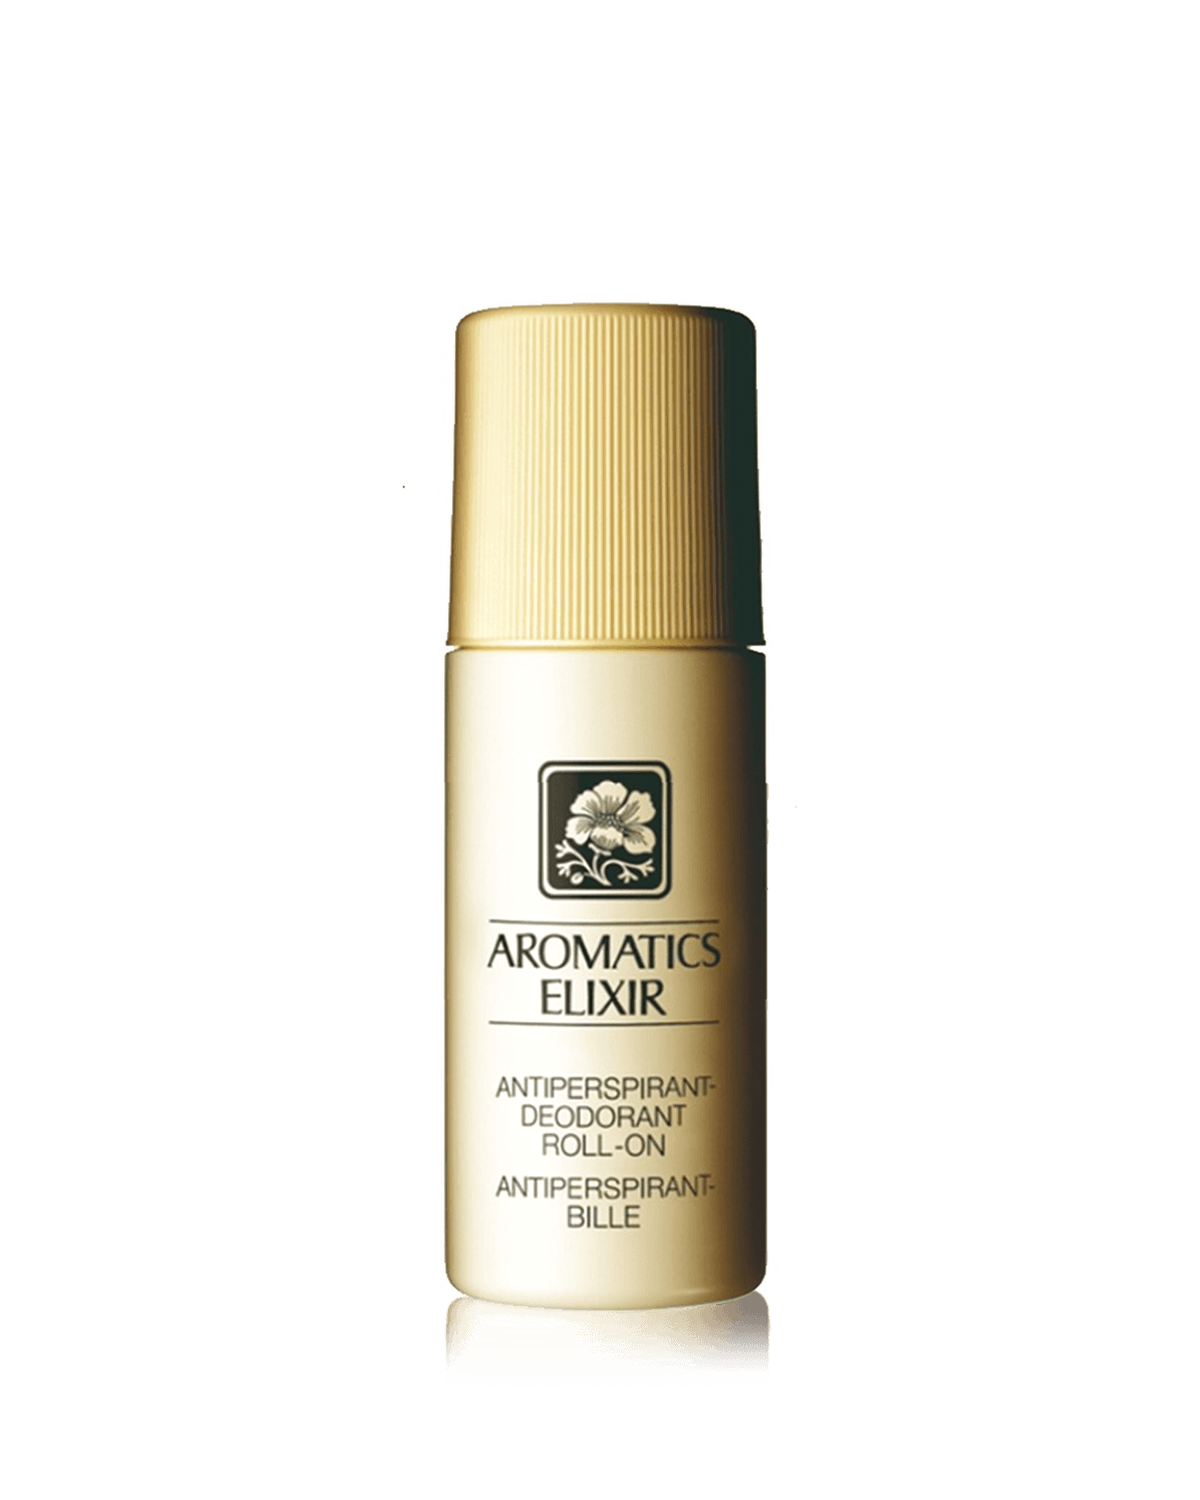 Aromatics Elixir™ Anti-Perspirant Deodorant